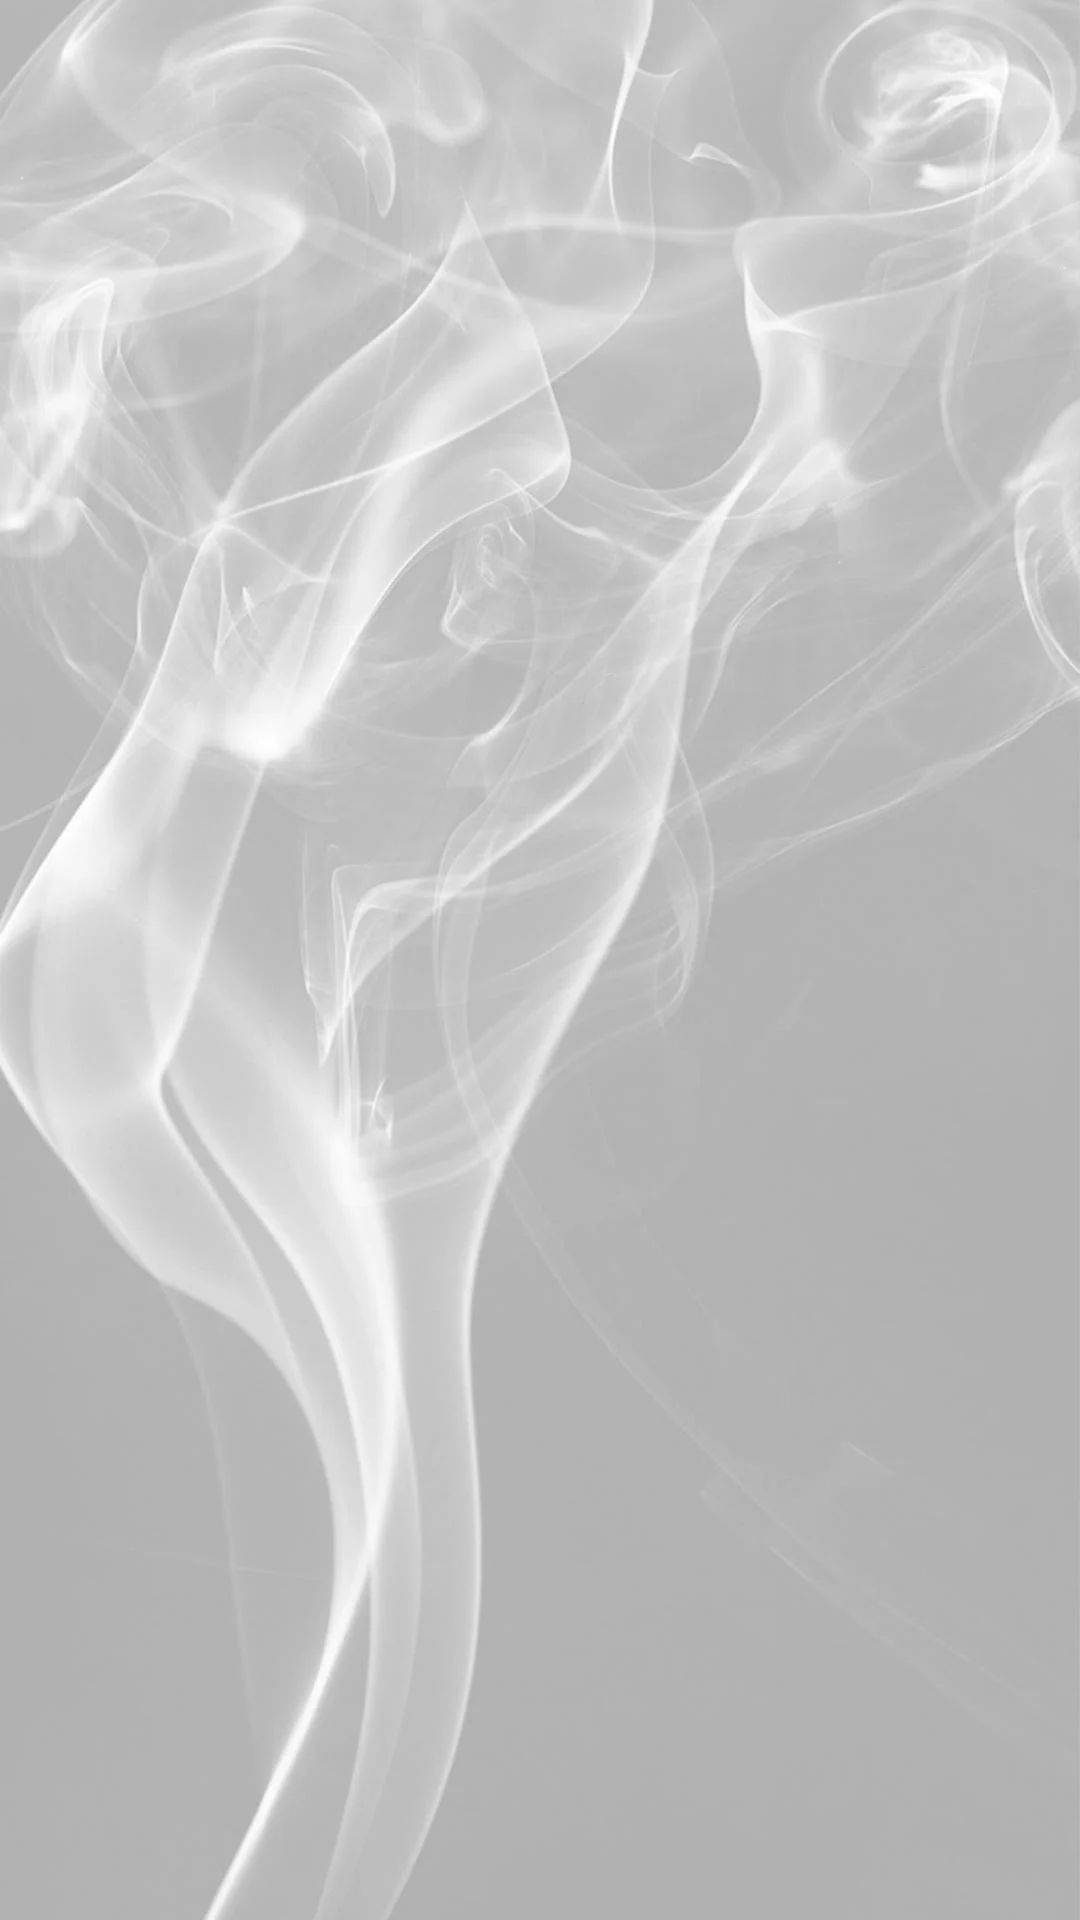 Aesthetic White Smoke Background